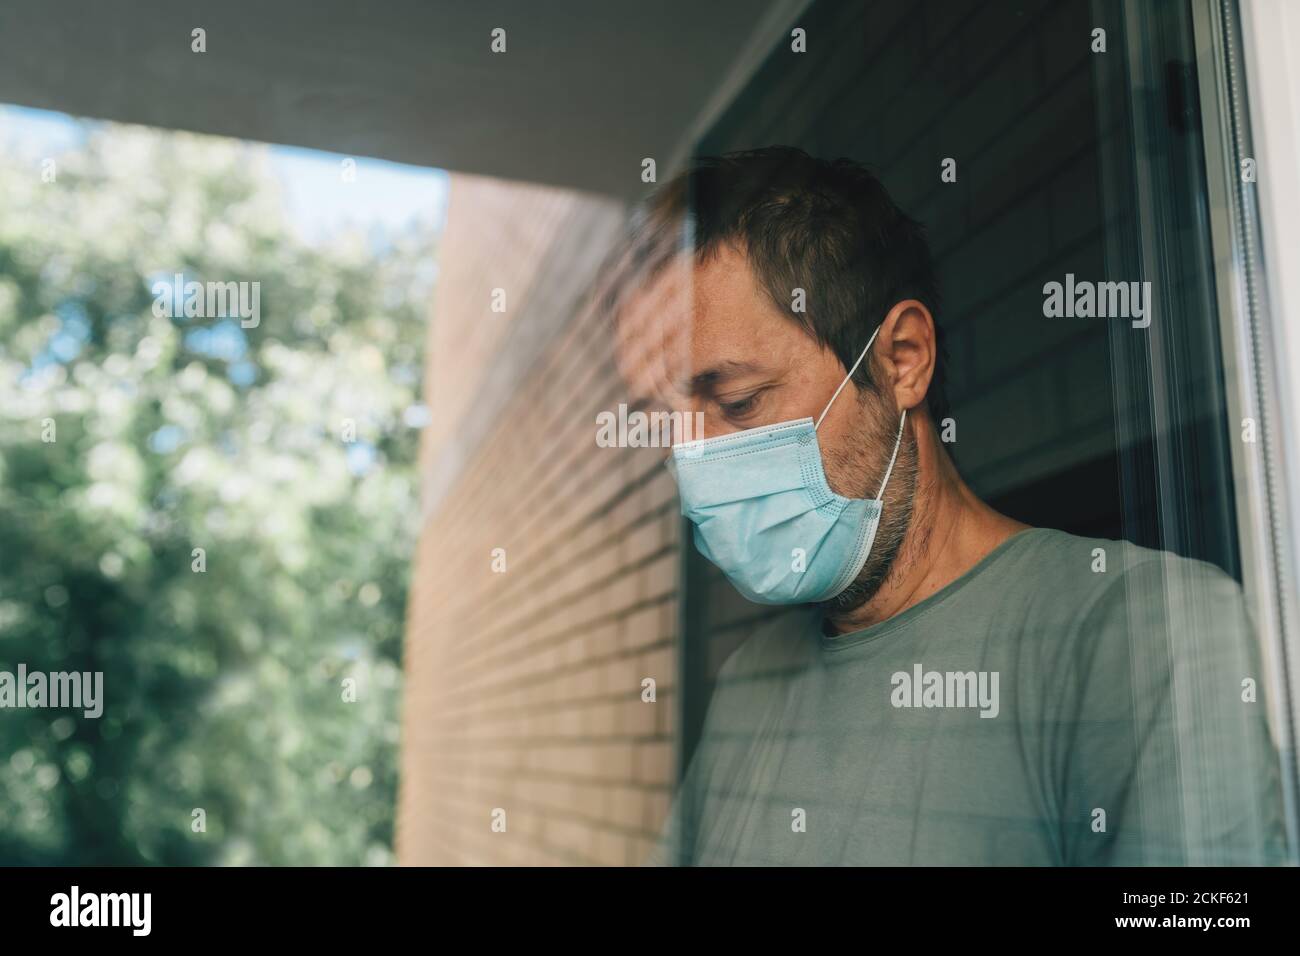 Besorgter Mann mit schützender Gesichtsmaske in Selbstisolation Hausquarantäne während Coronavirus Ausbruch, Porträt der erwachsenen männlichen Person hinter dem Fenster Stockfoto